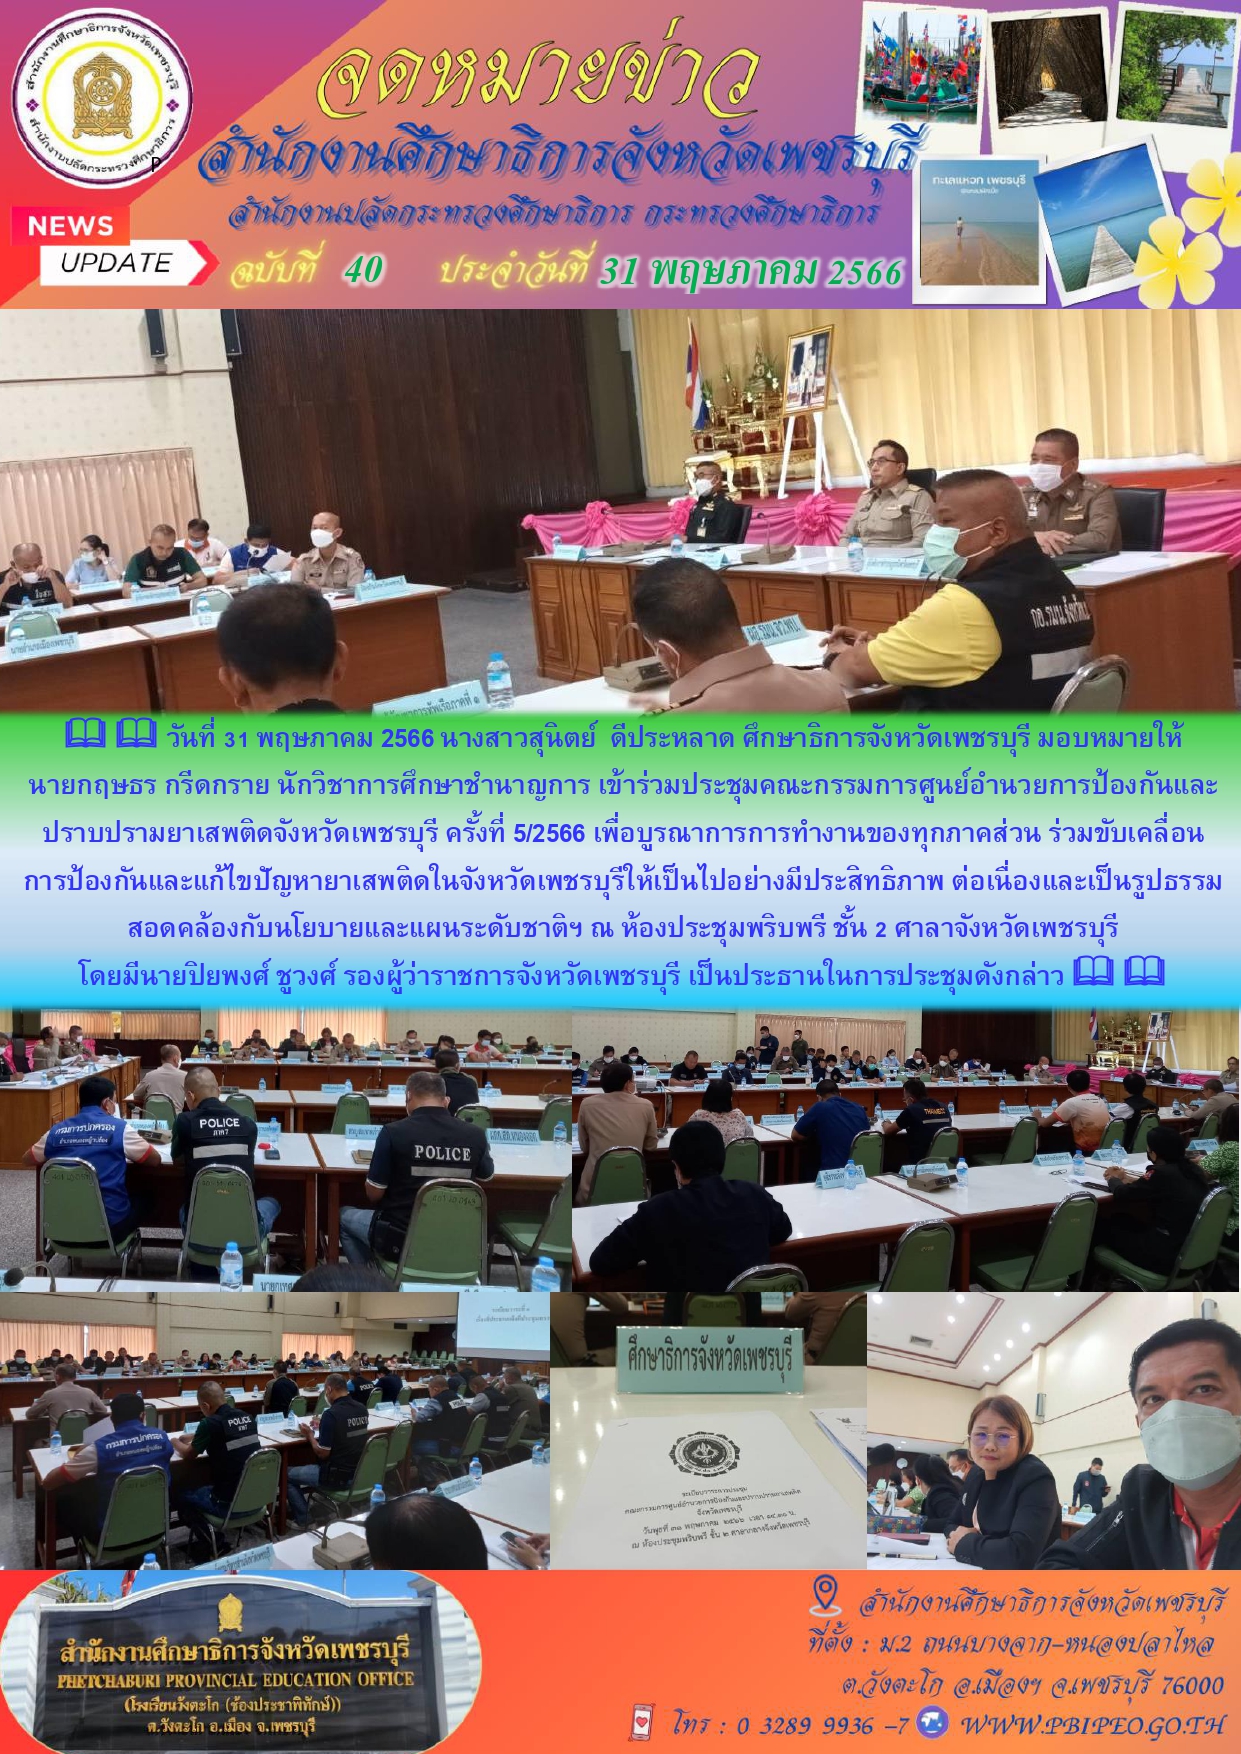 ประชุมคณะกรรมการศูนย์อำนวยการป้องกันและปราบปรามยาเสพติดจังหวัดเพชรบุรี ครั้งที่ 5/2566